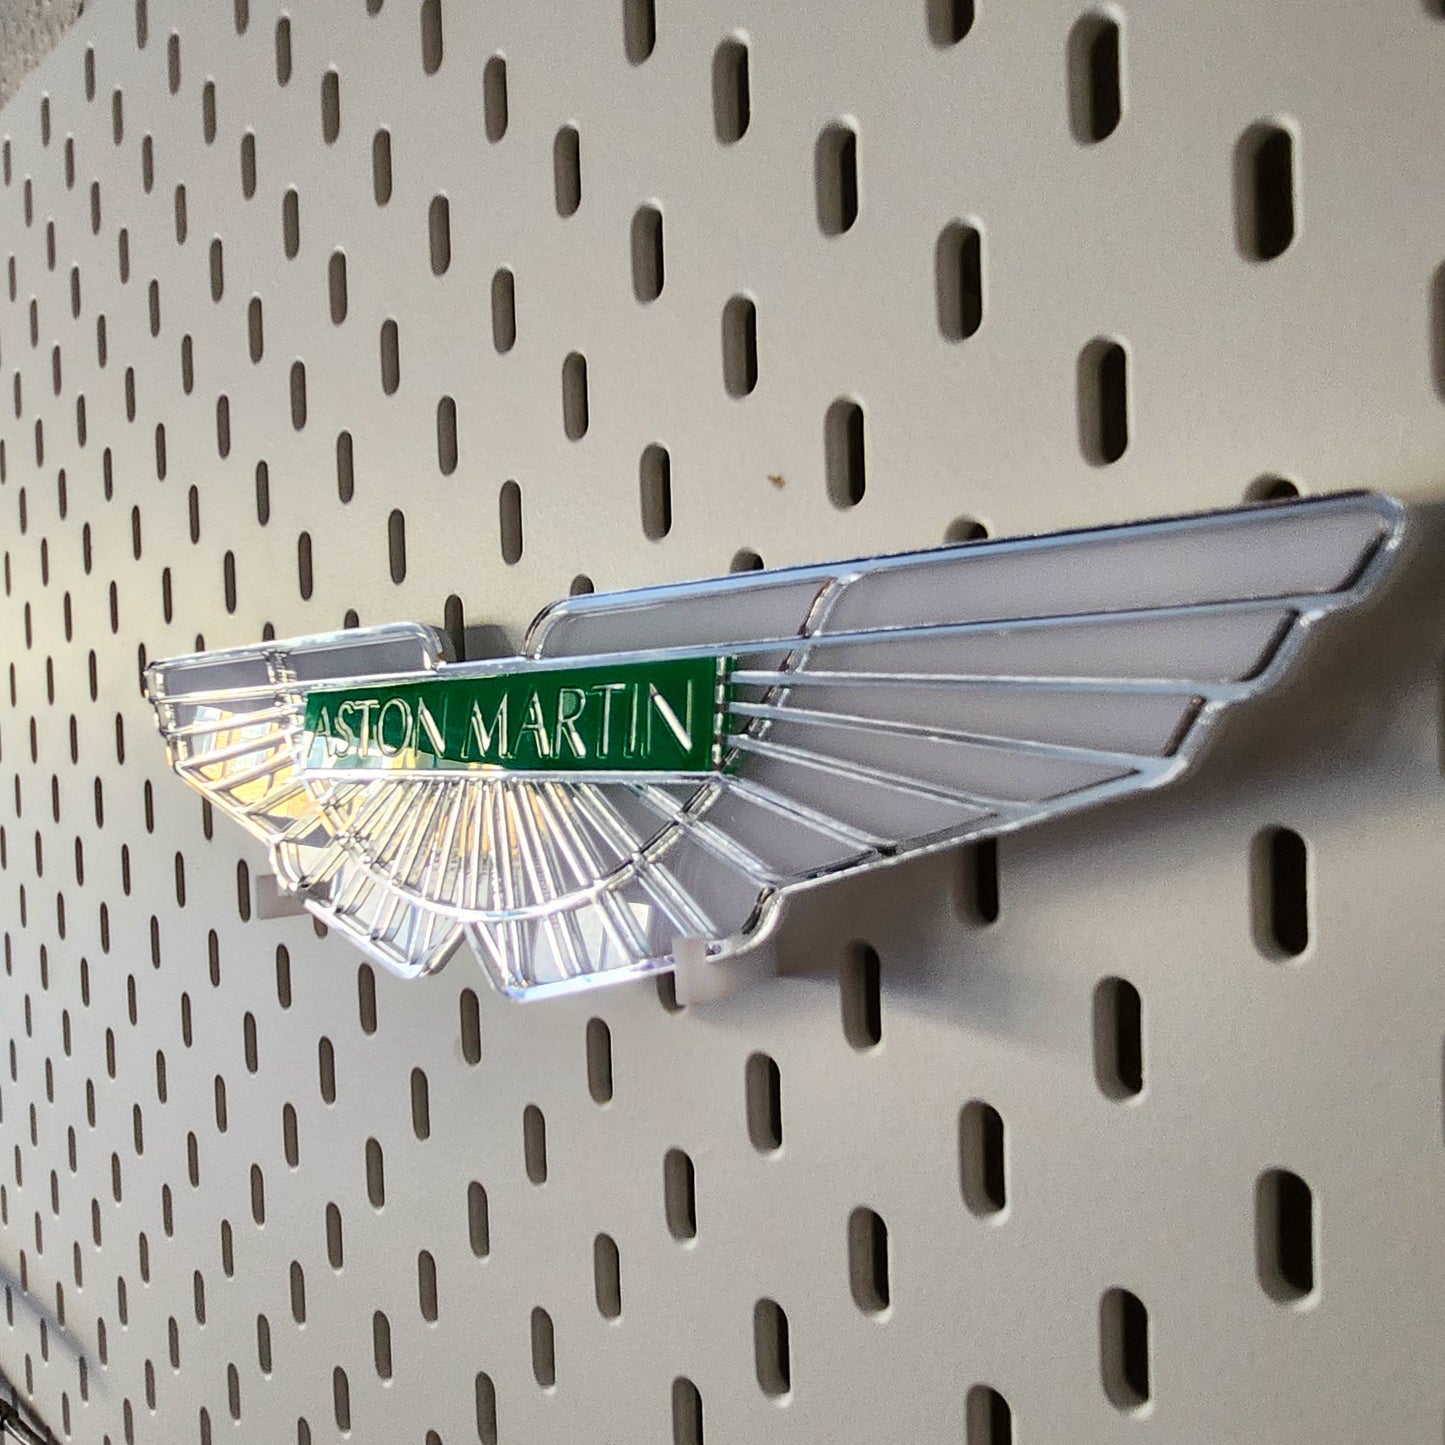 Aston Martin Logo Sign Acrylic